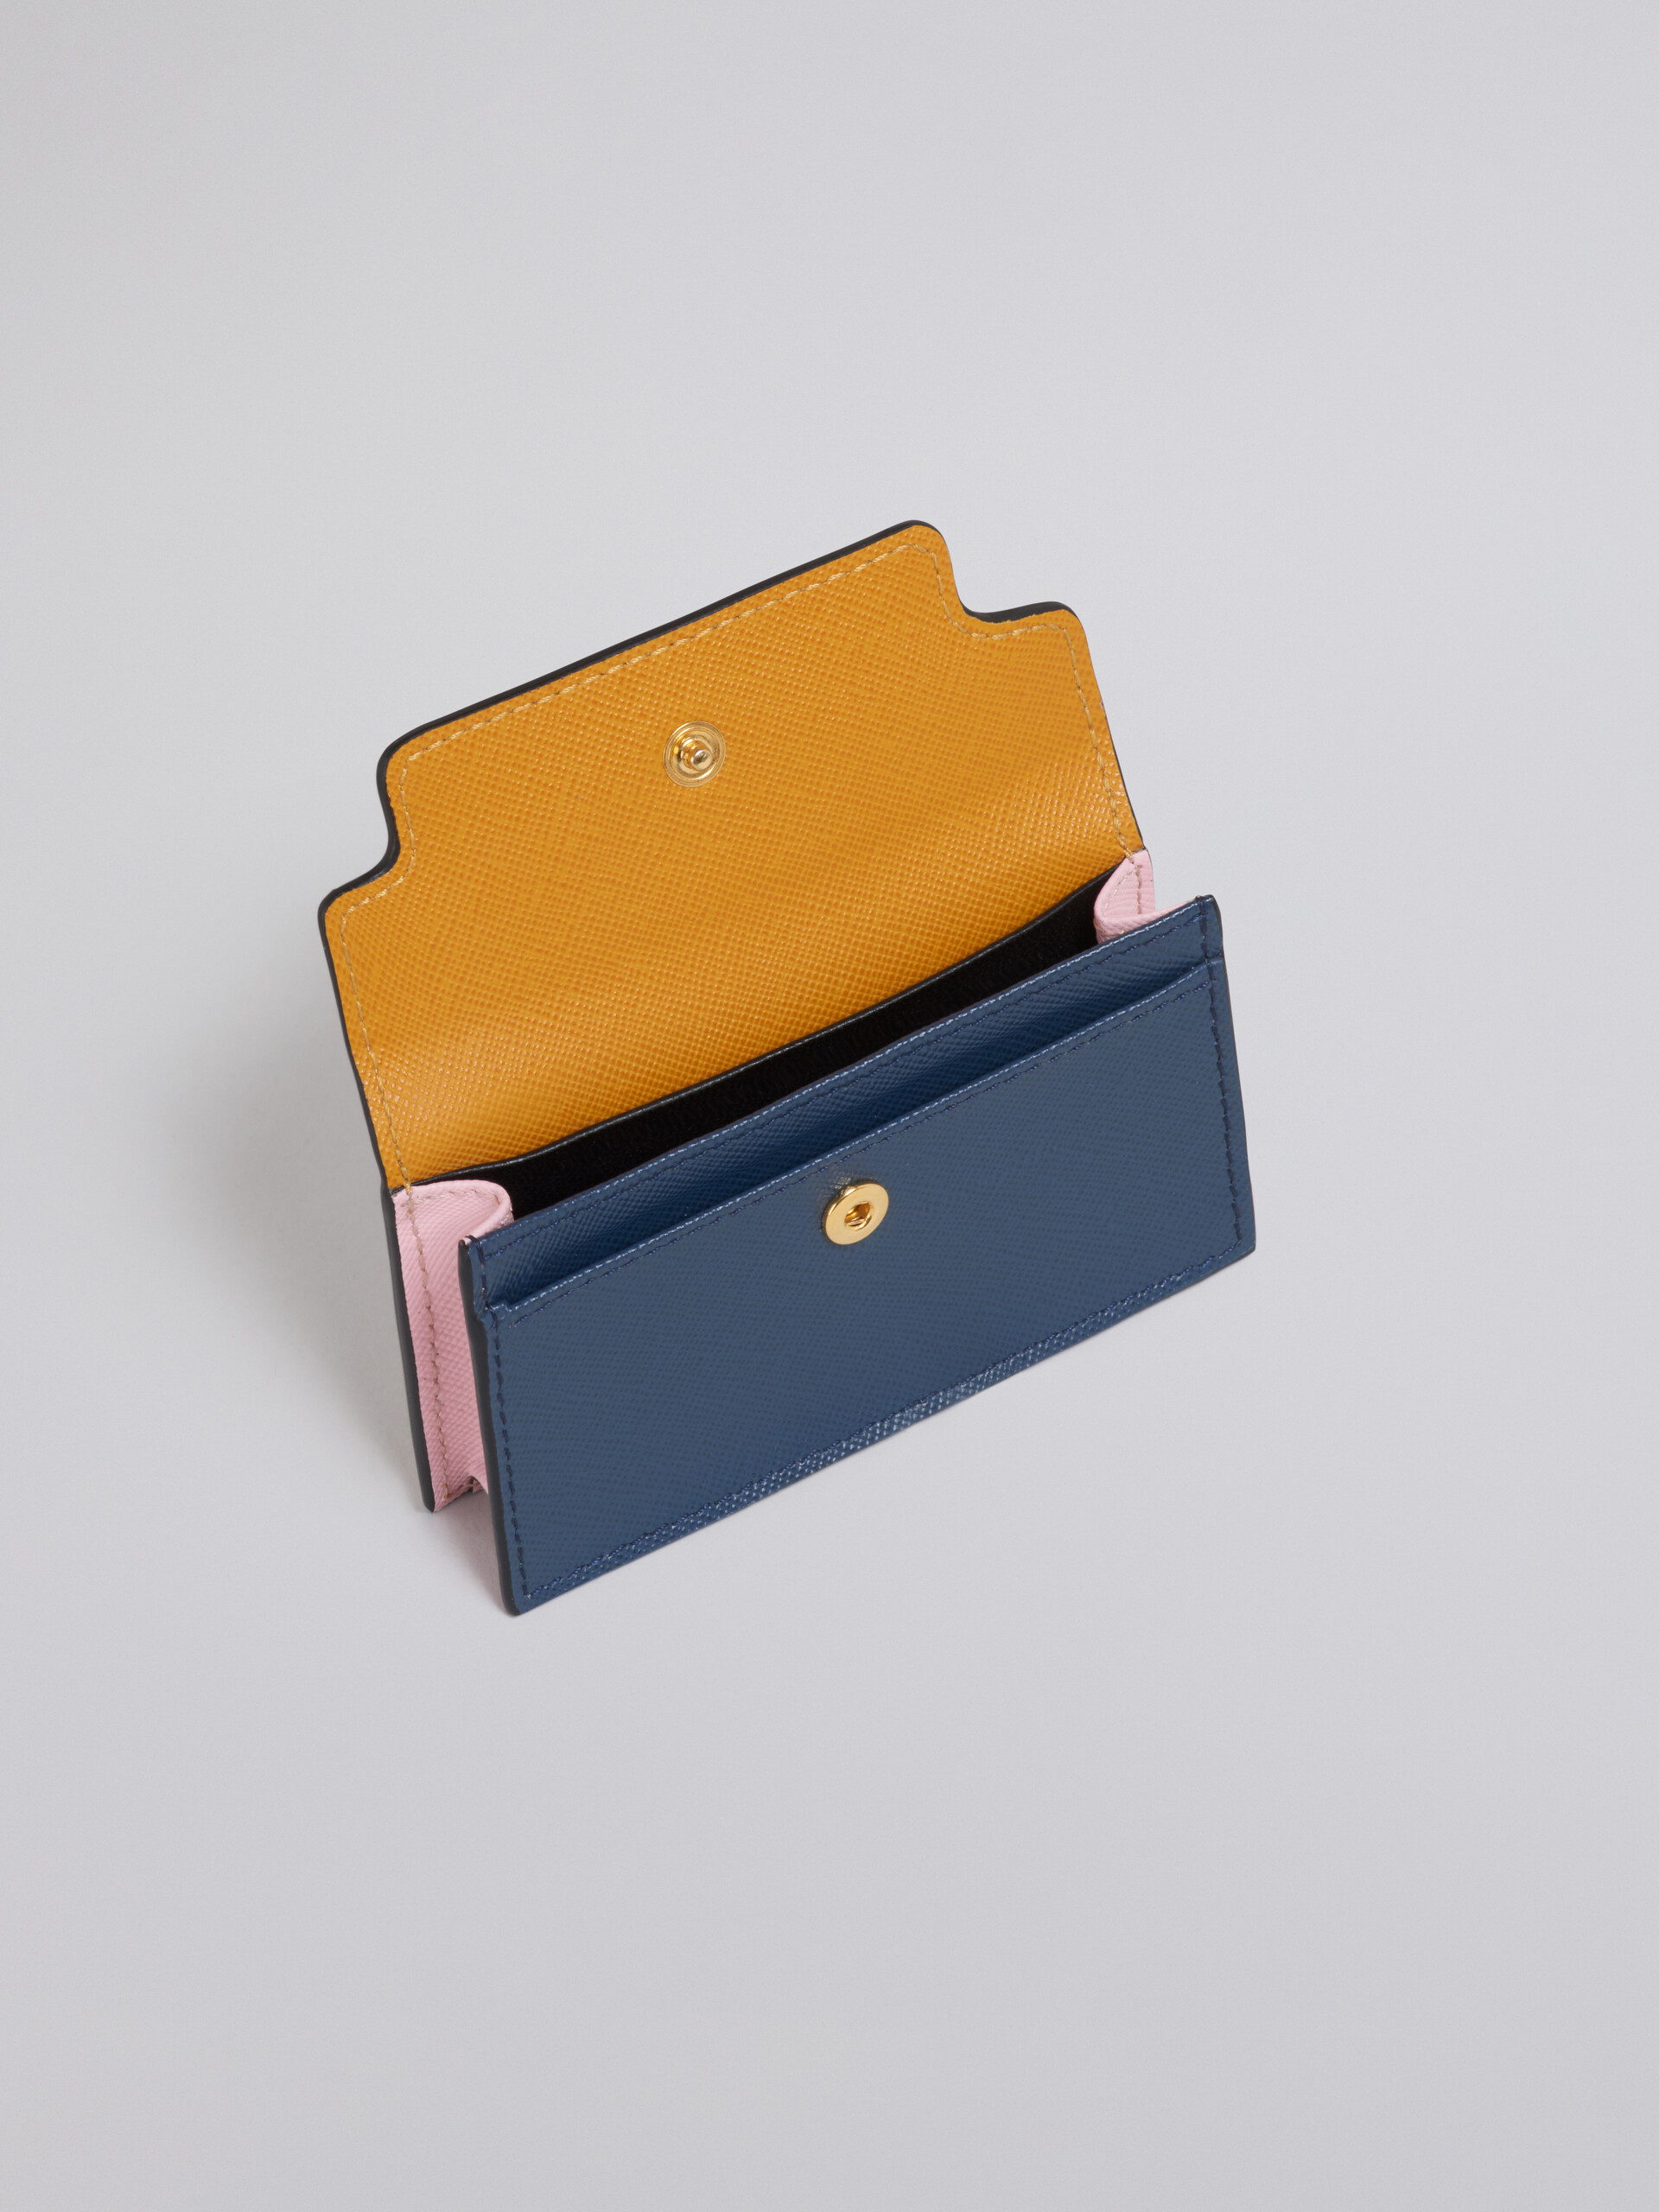 Portabiglietti da visita in saffiano arancio rosa e blu - Portafogli - Image 2